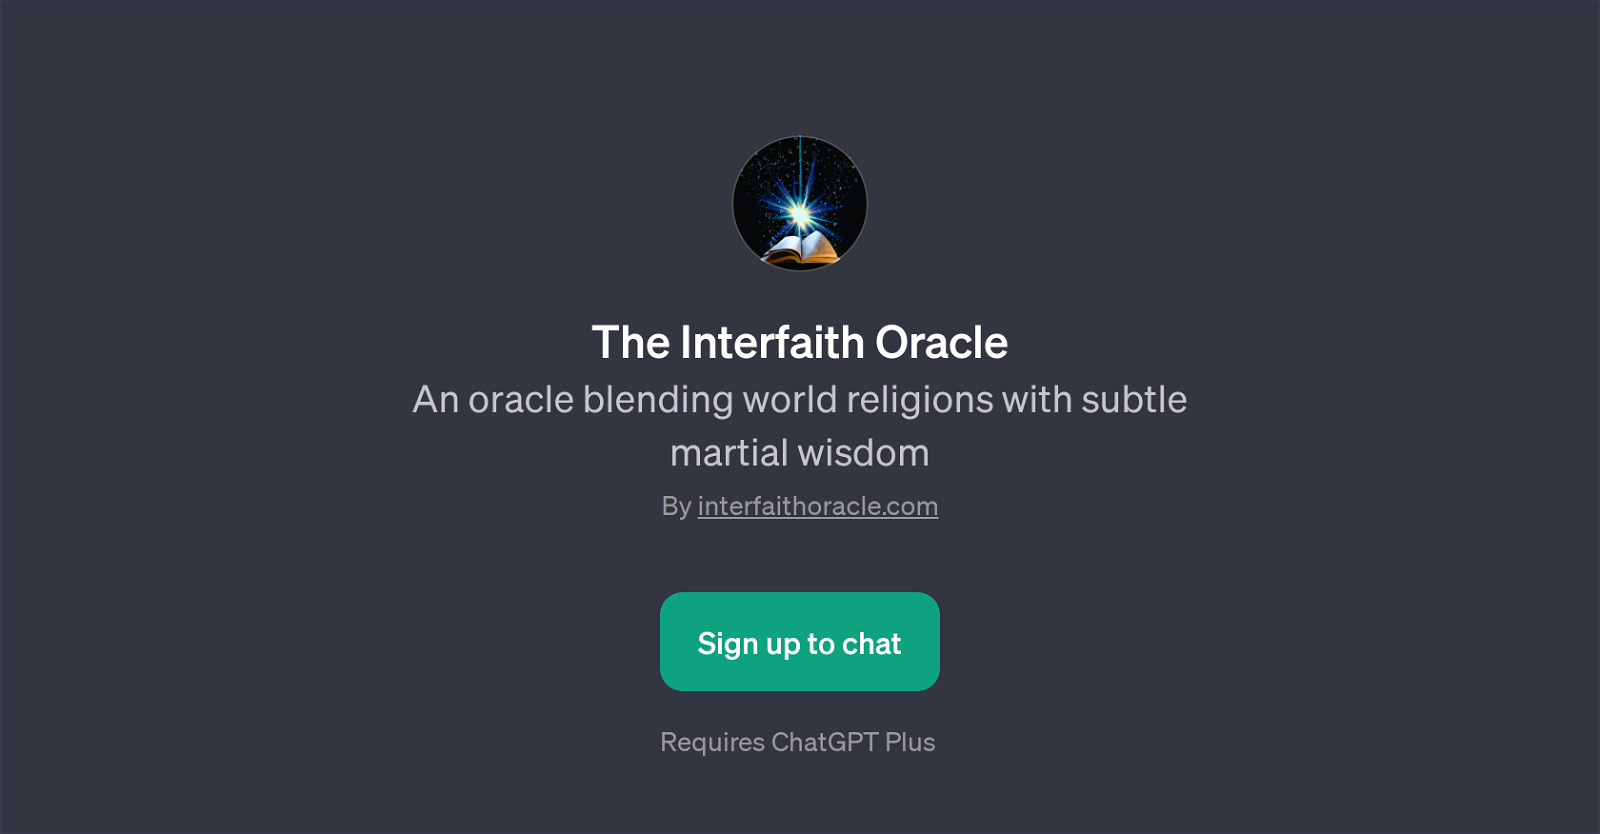 The Interfaith Oracle website